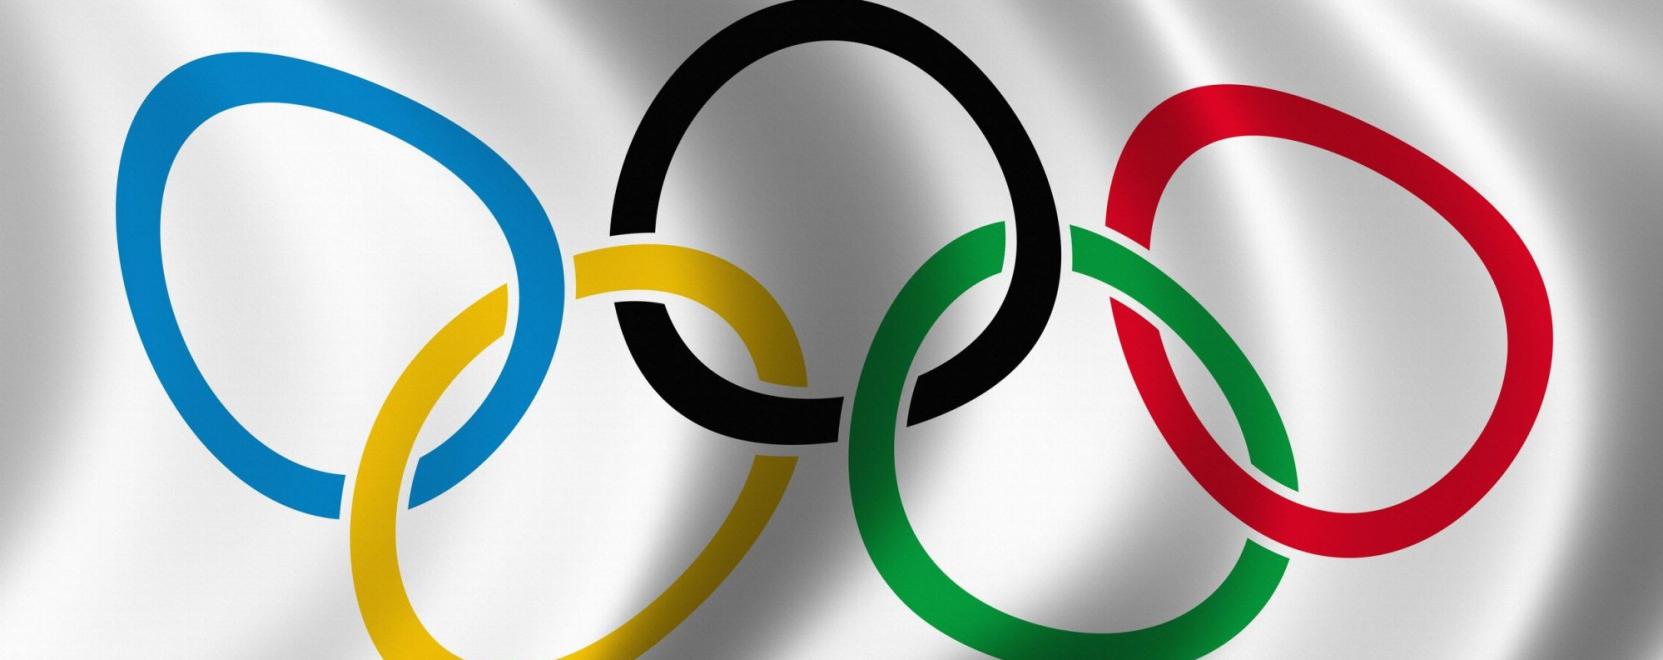 Arcfelismerő technológiát vetnek be a tokiói olimpián